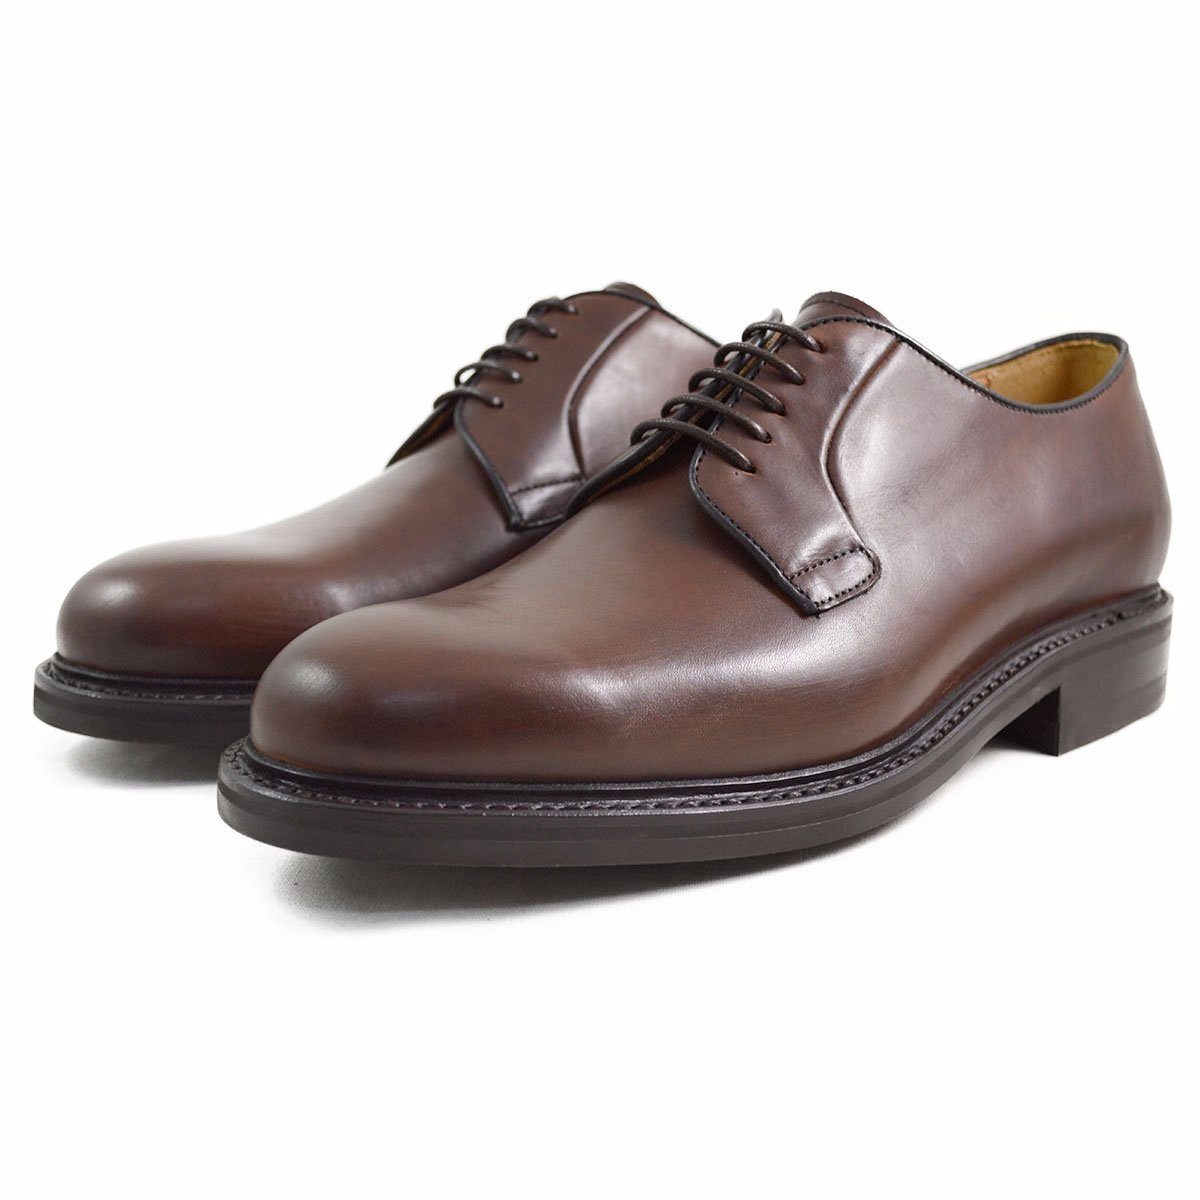 berwick shoes online shop